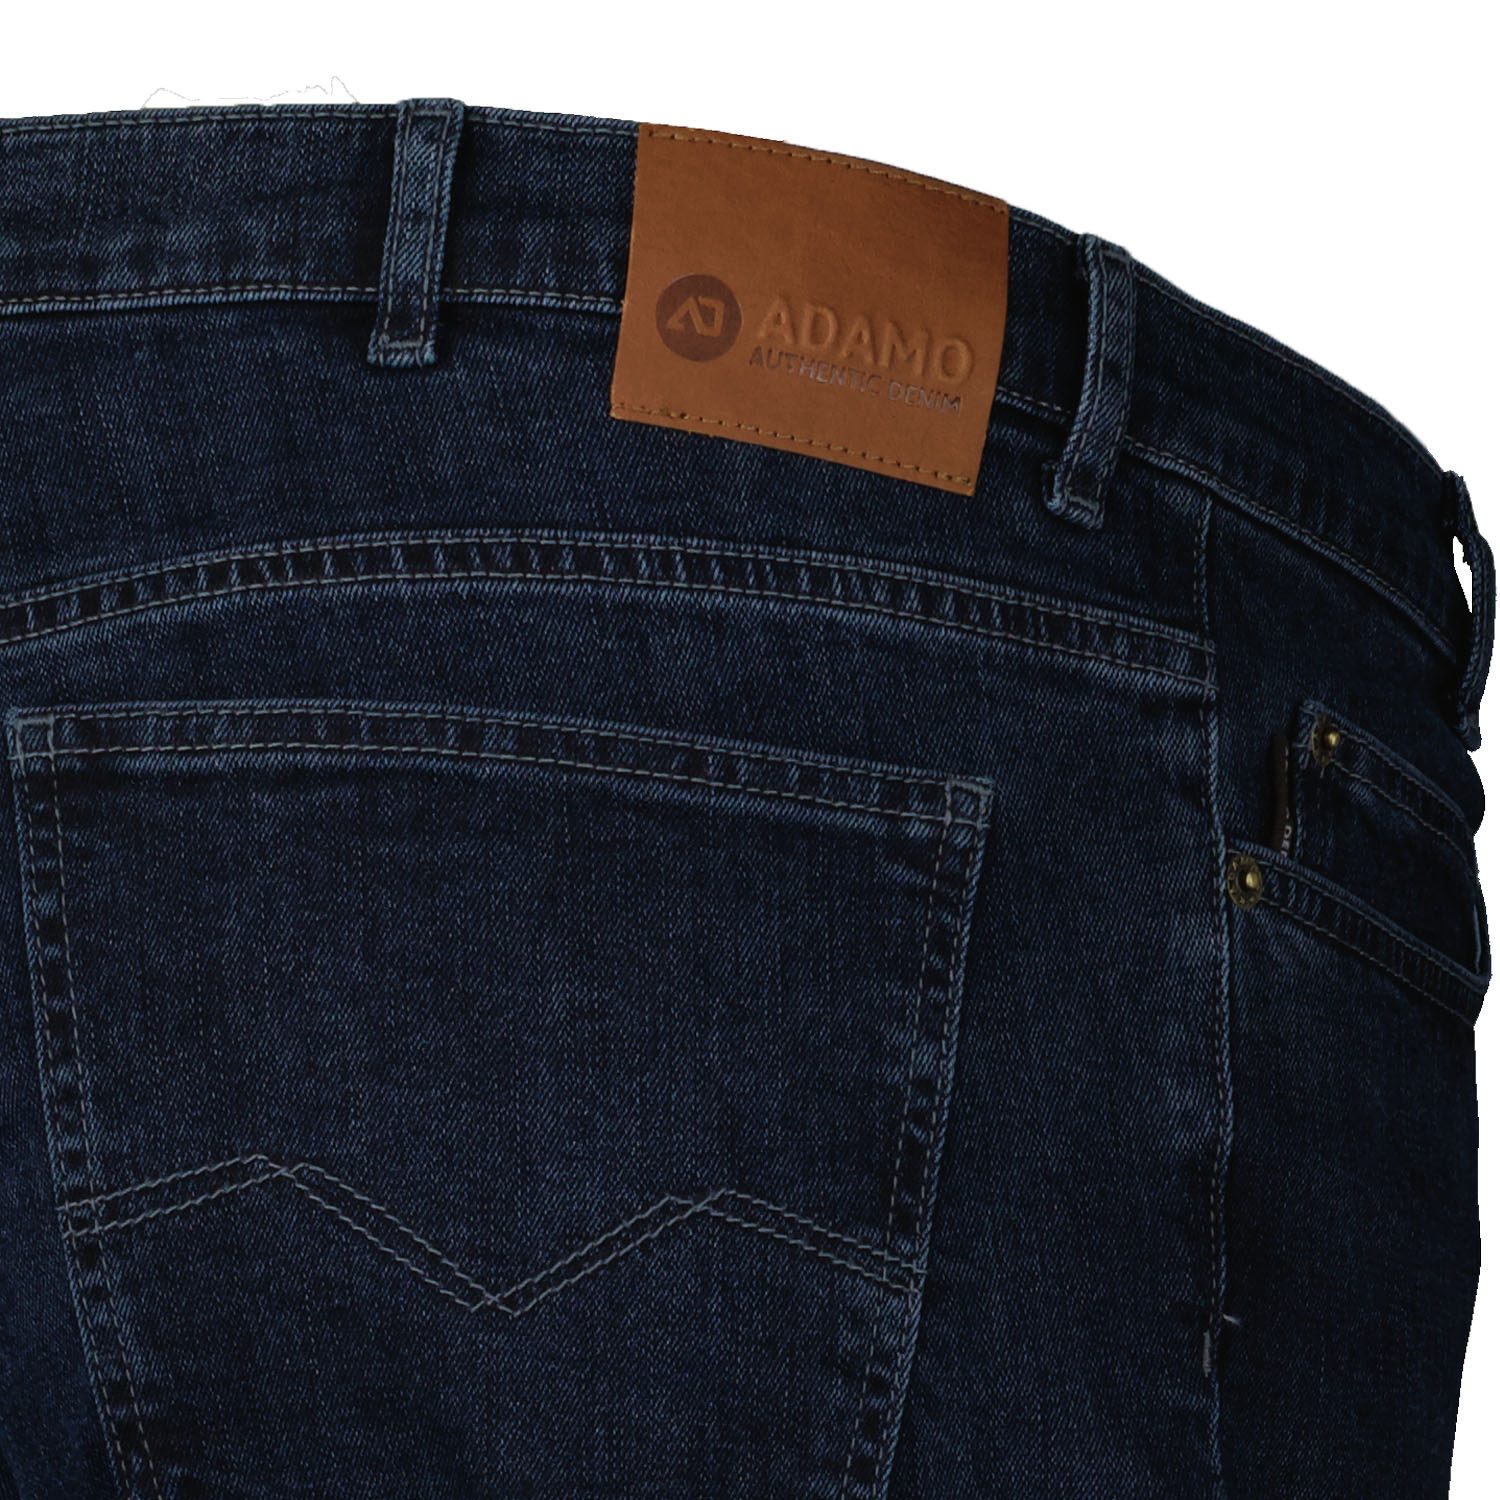 ADAMO 5-Pocket Jeans lang mit Stretch in dark navy für Herren Serie "NEVADA" in Übergrößen 56 - 80